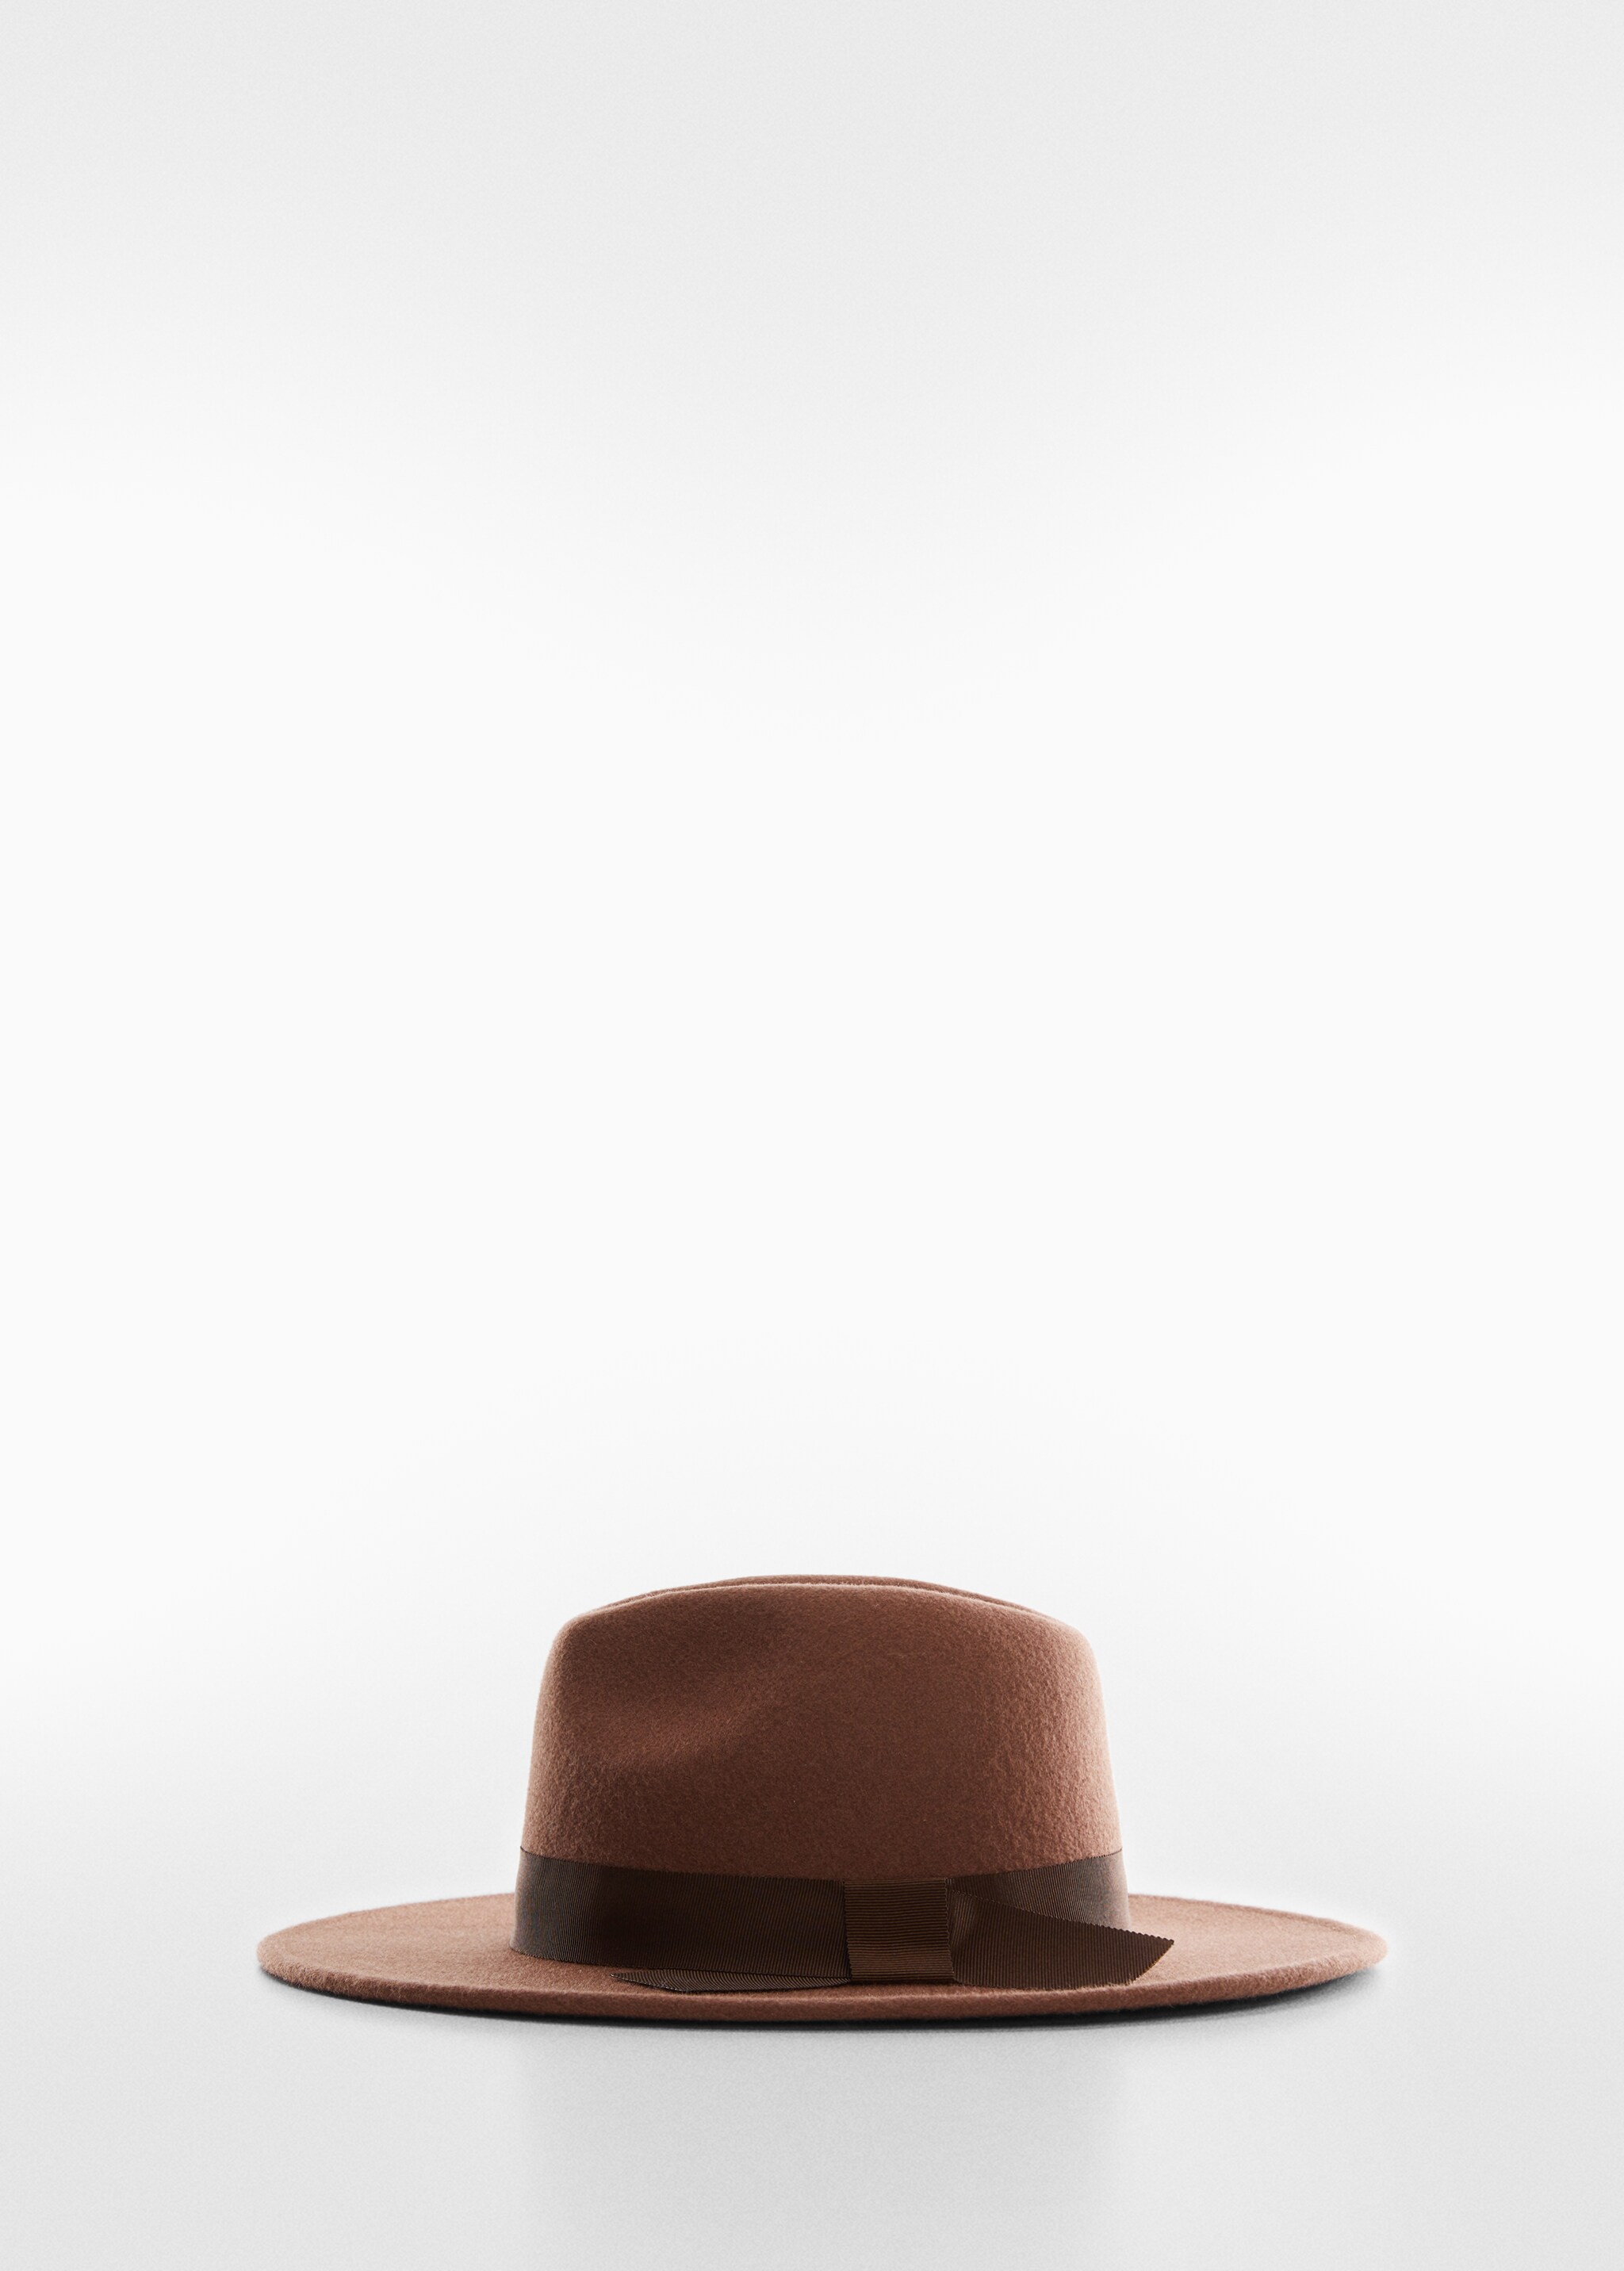 Sombrero lana cinta - Artículo sin modelo